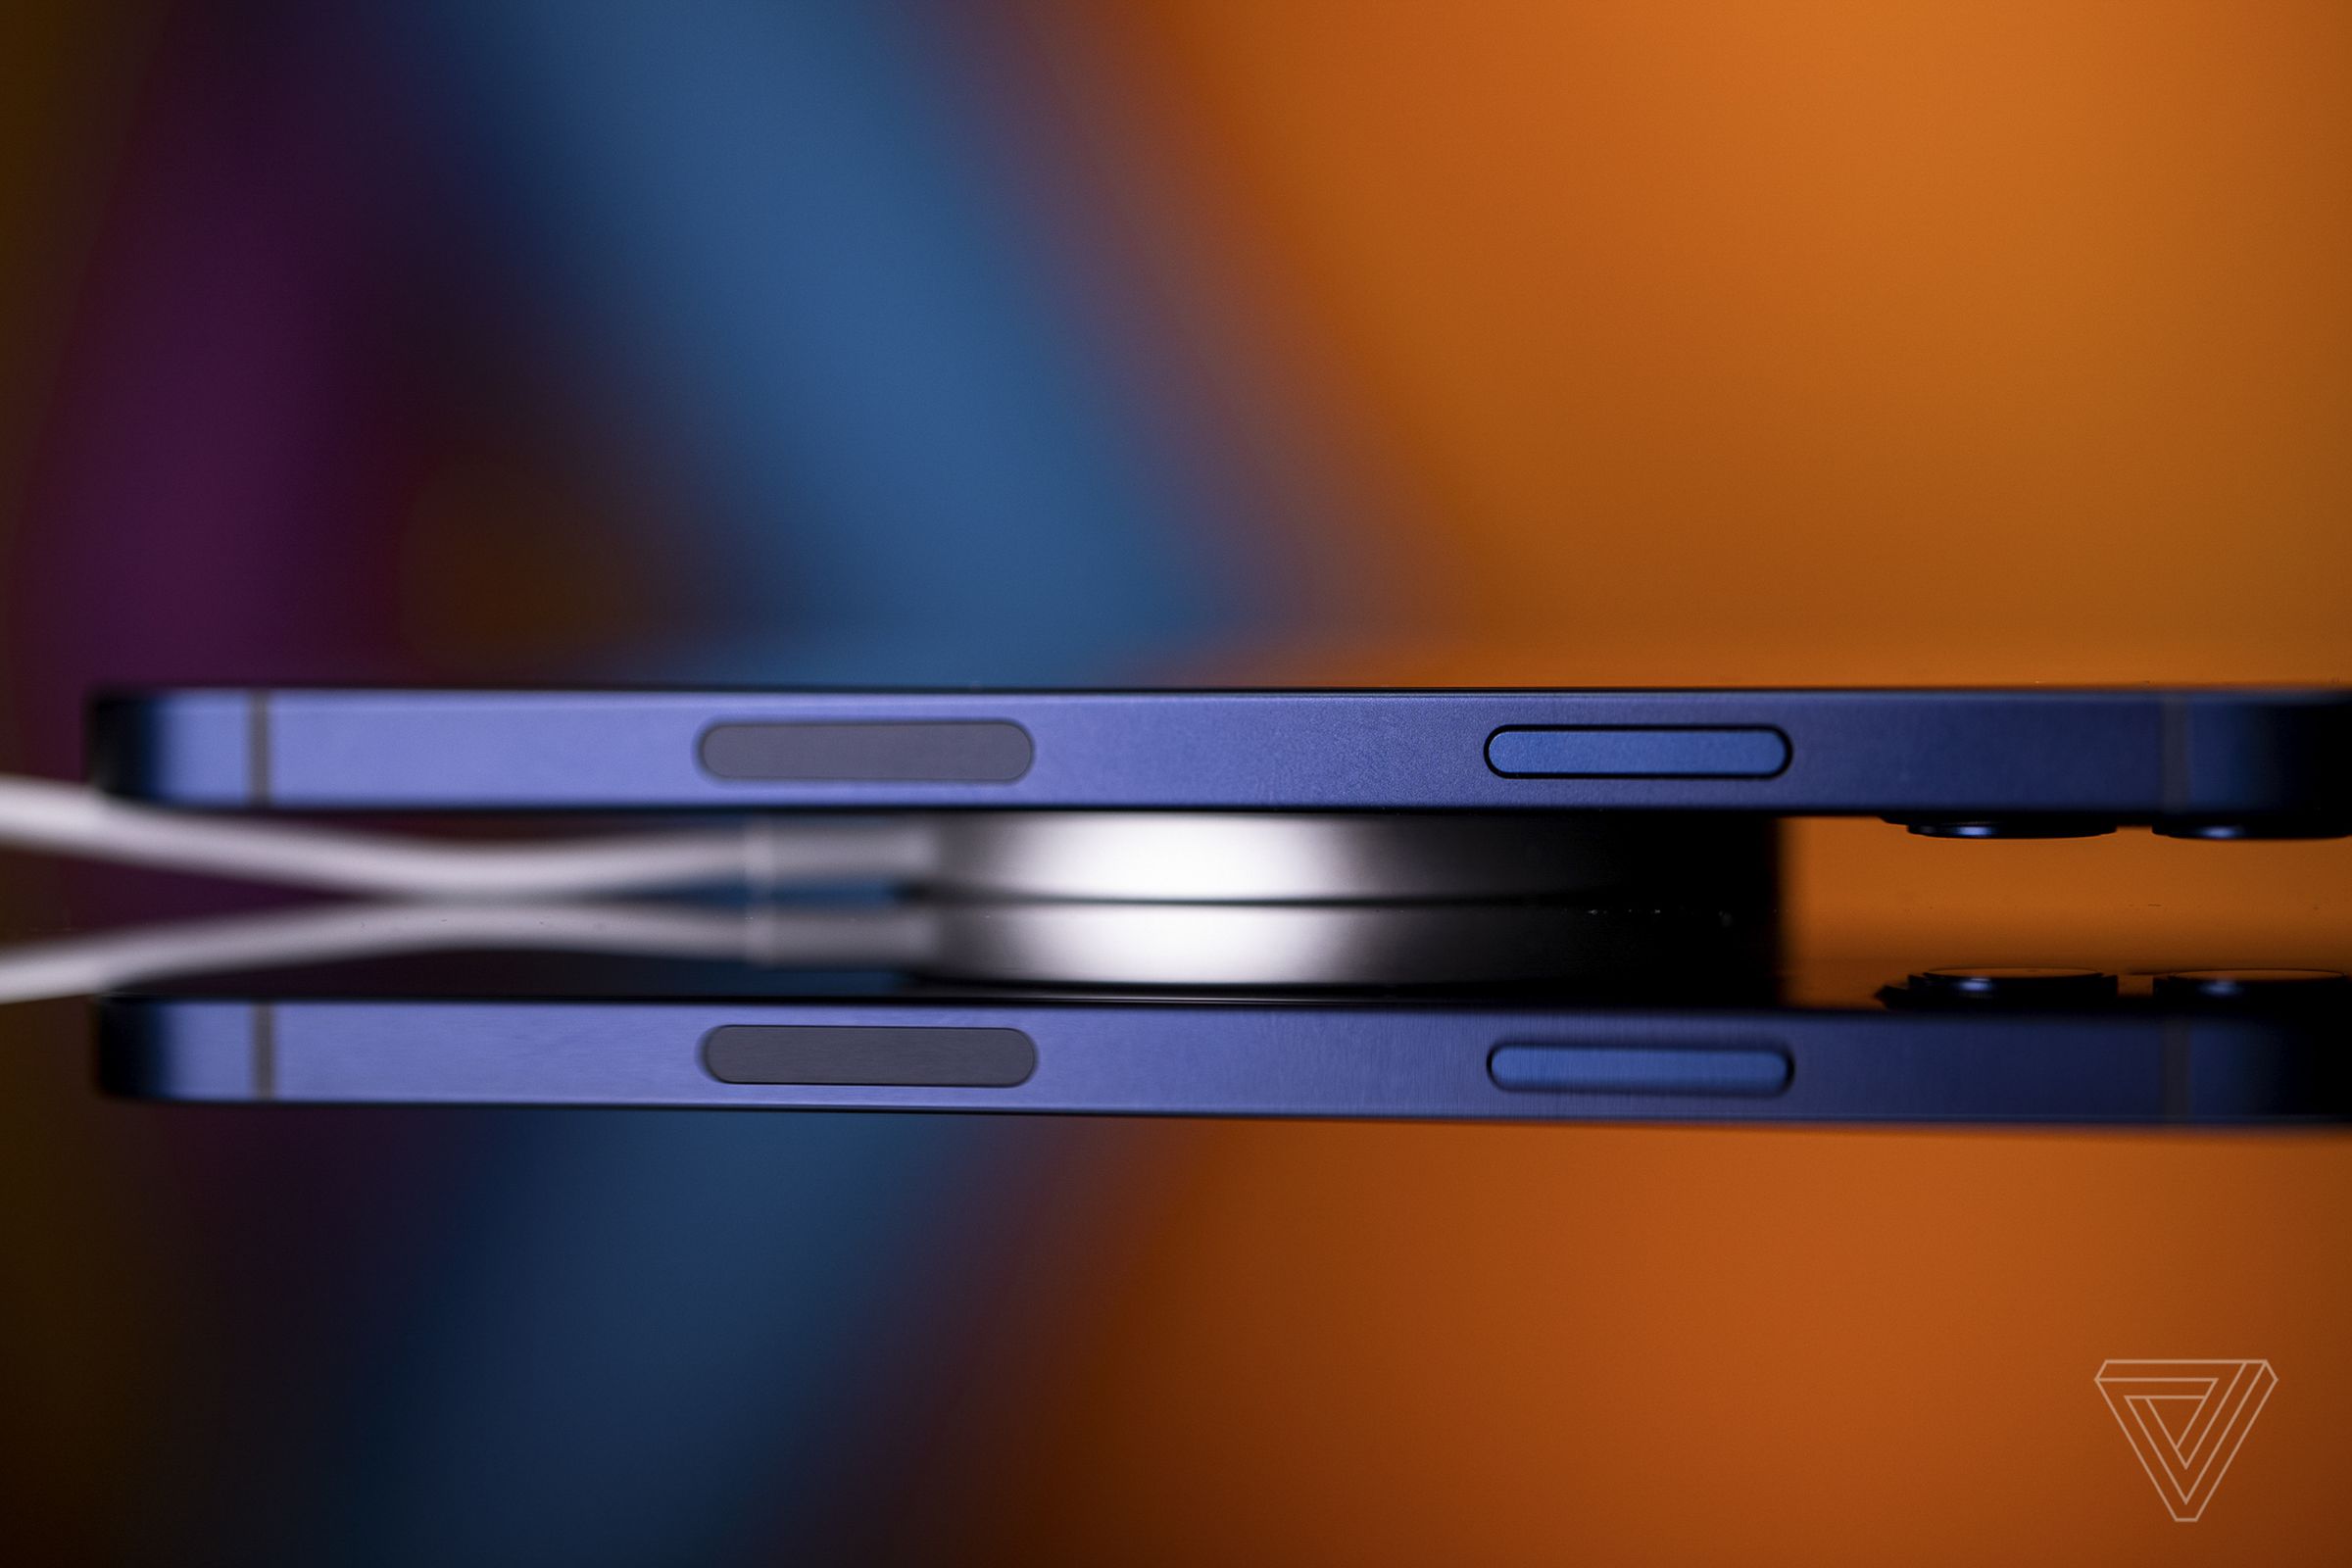 Der MagSafe-Ladepuck ist dünn, leicht und kann das iPhone 12 mit 15 W betreiben.